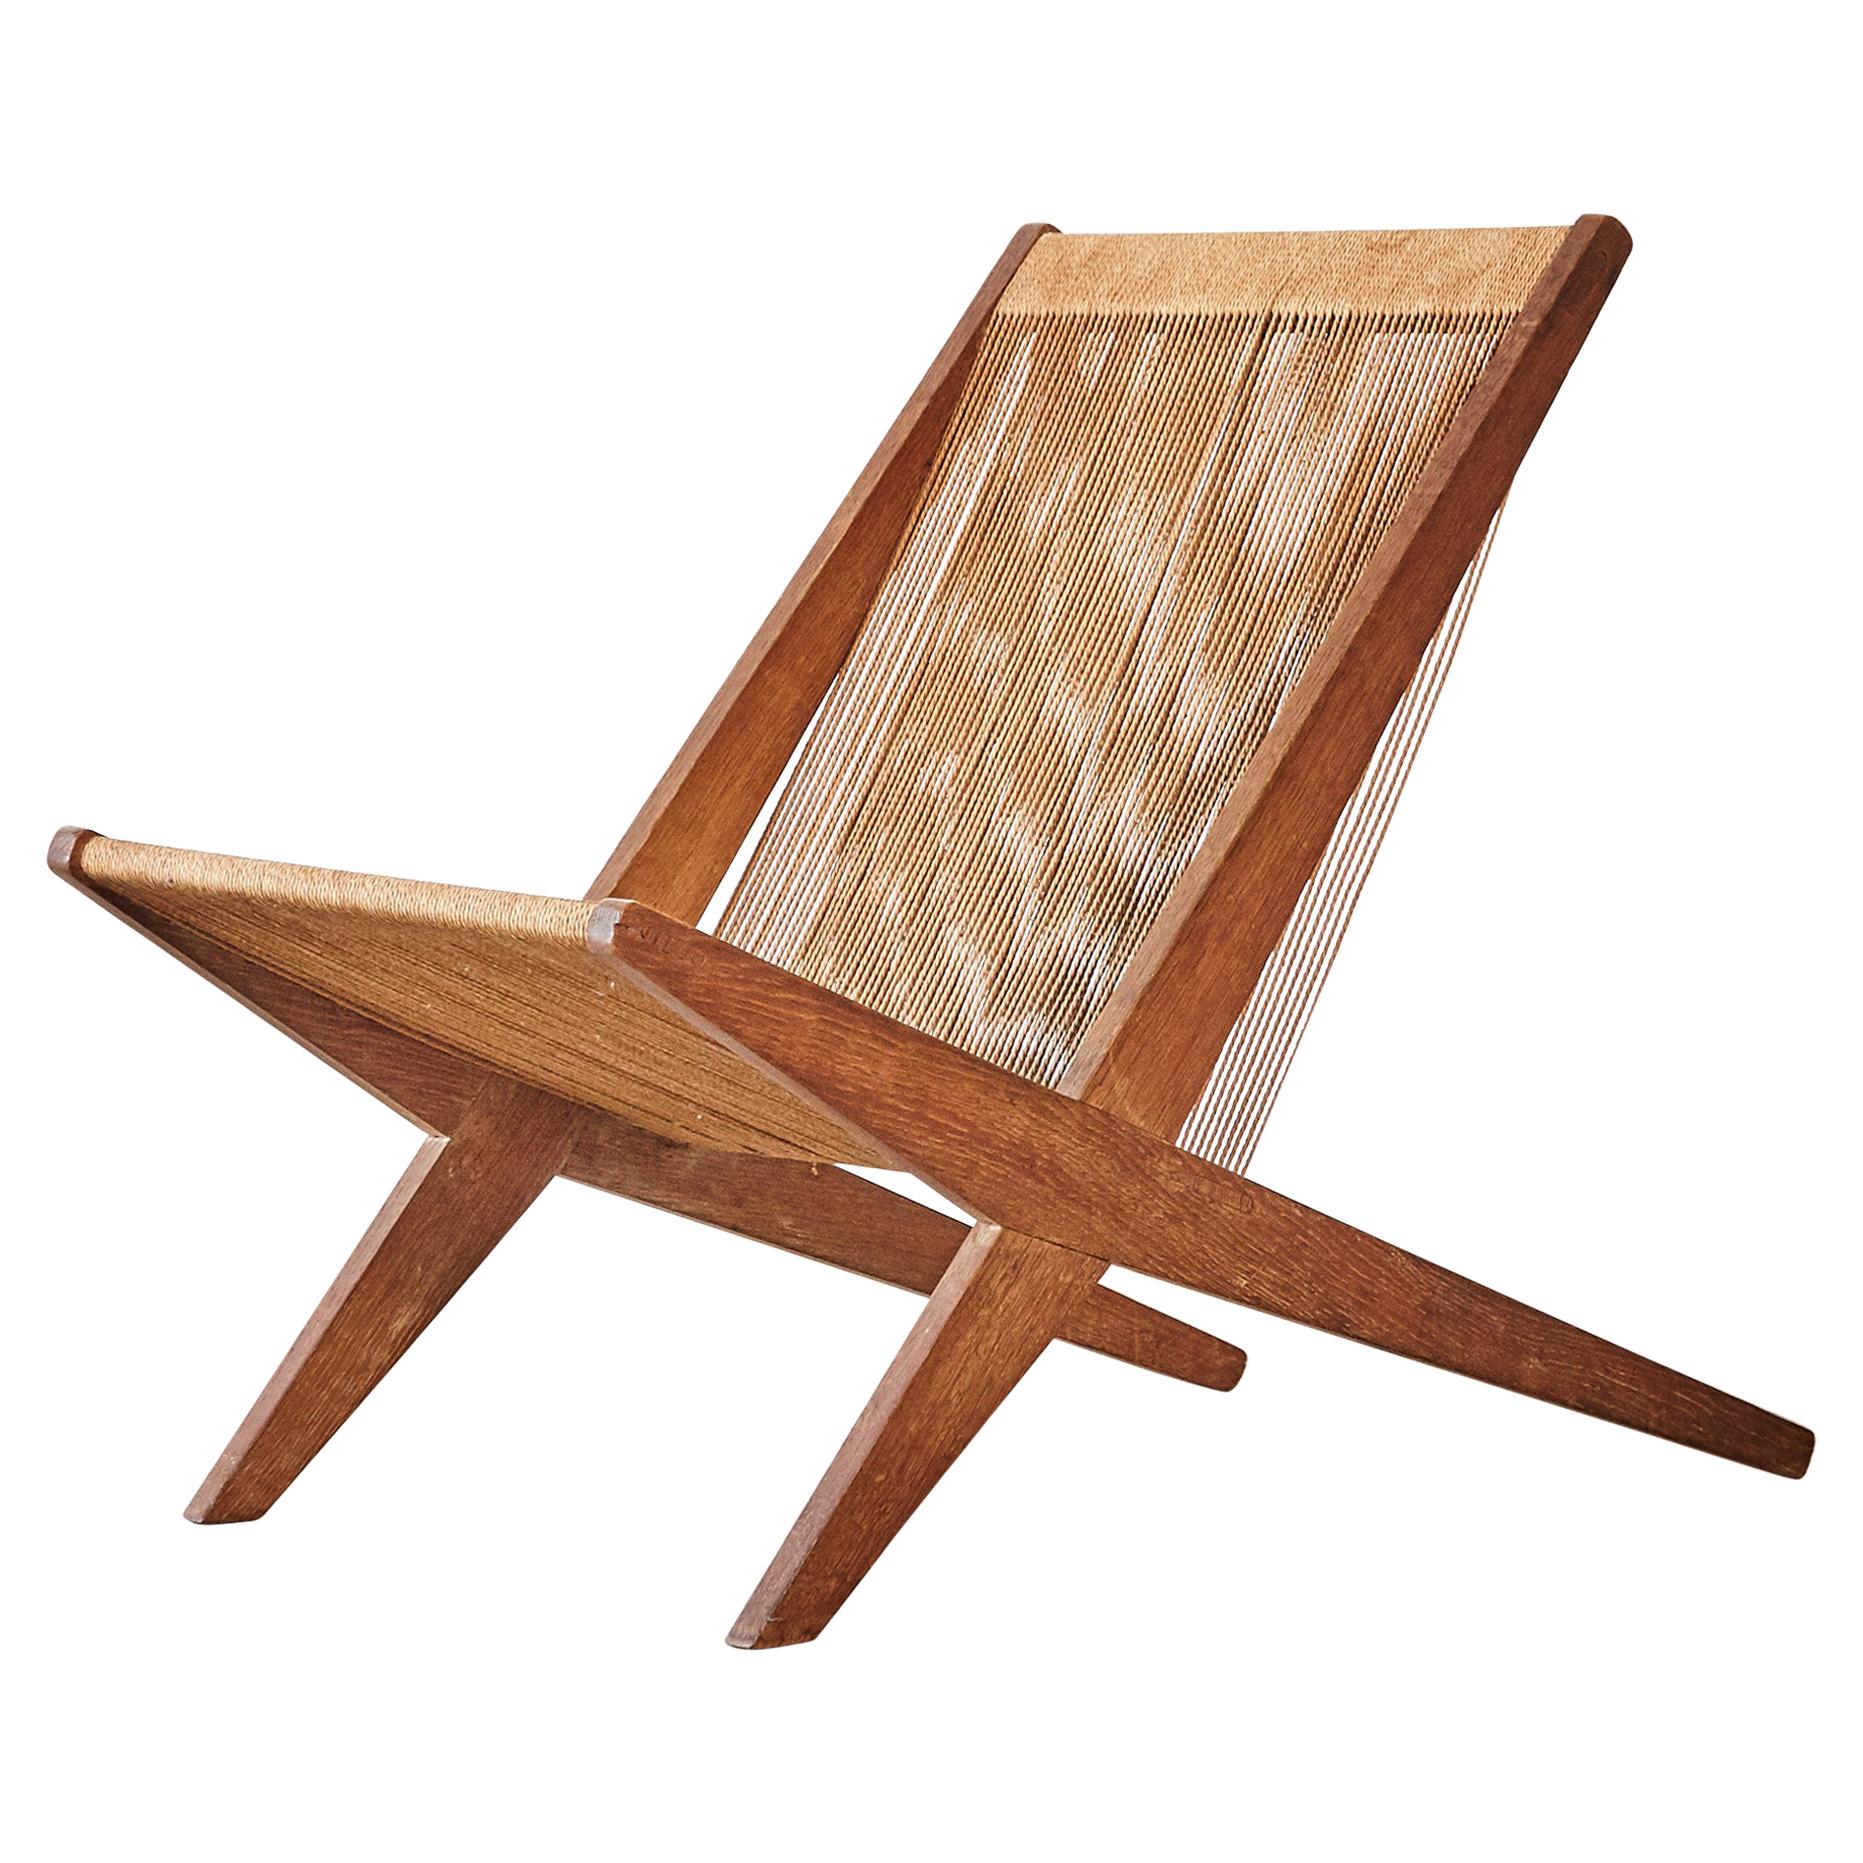 Oak and Rope Chair Attributed to Poul Kjaerholm & Jørgen Høj, Denmark, 1950s